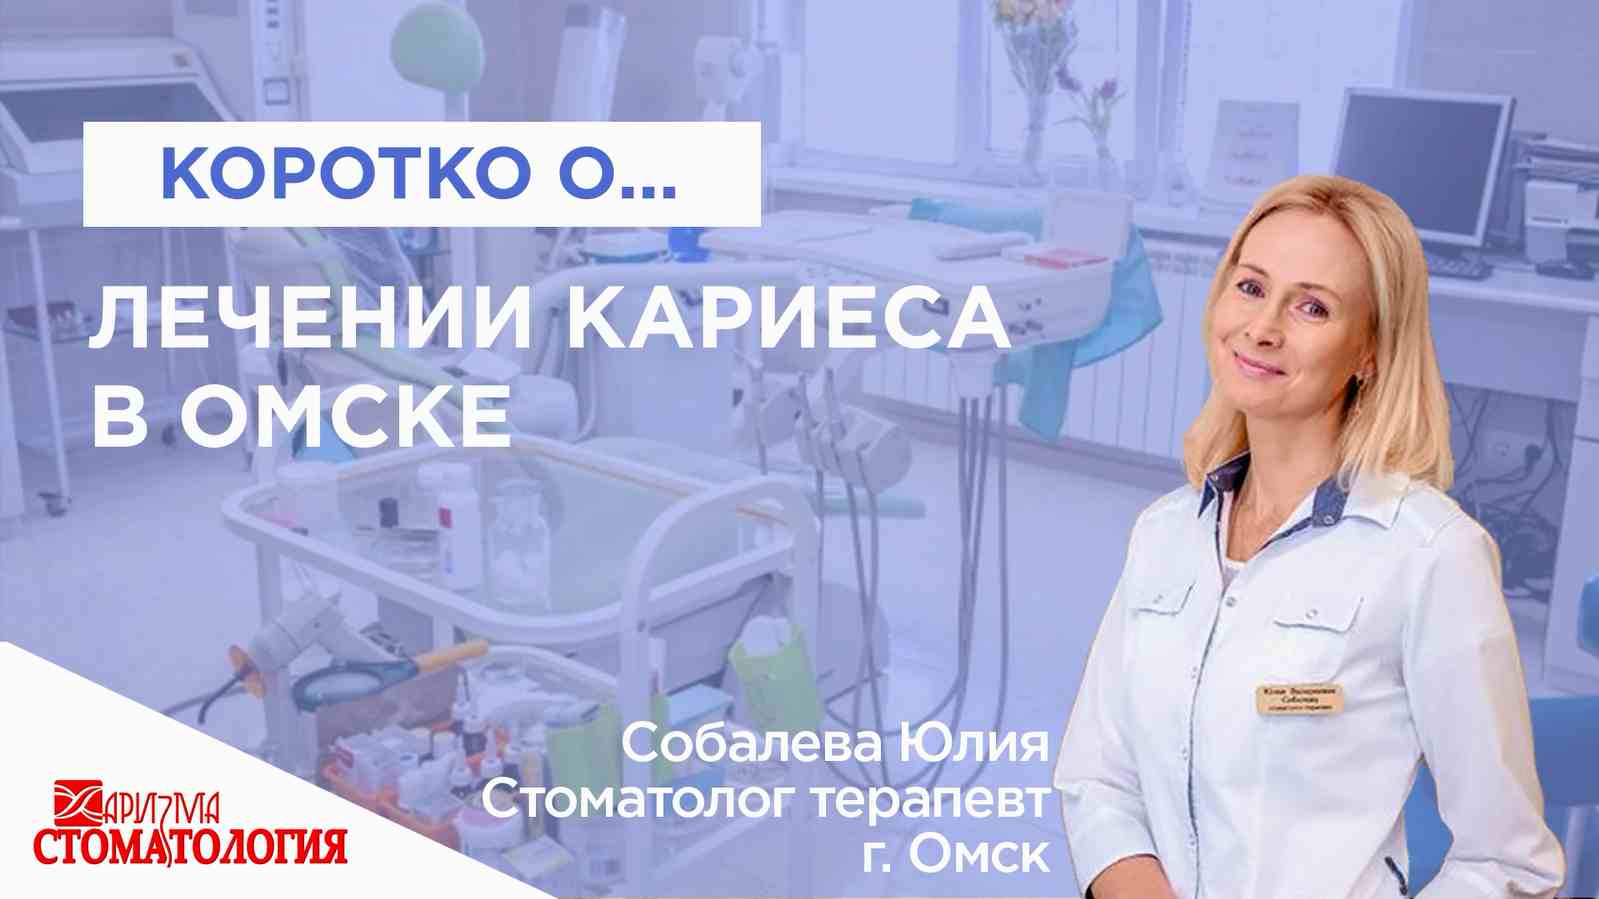 Лечение кариеса в Омске - высокое качество и доступные цены в клинике Харизма!